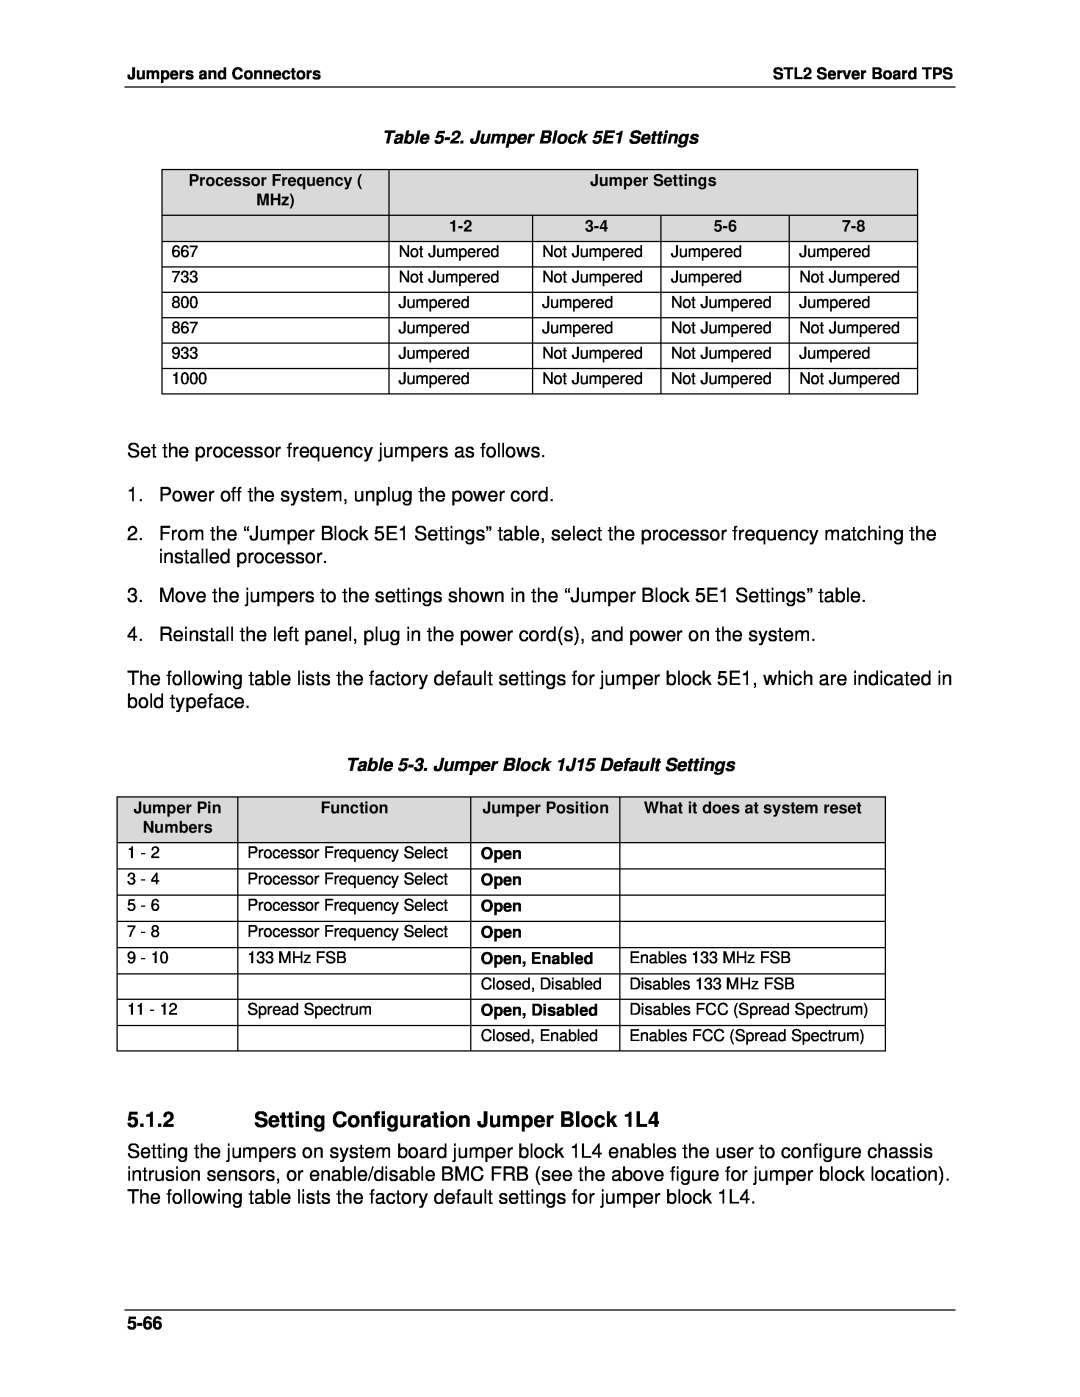 Intel STL2 manual 5.1.2Setting Configuration Jumper Block 1L4 